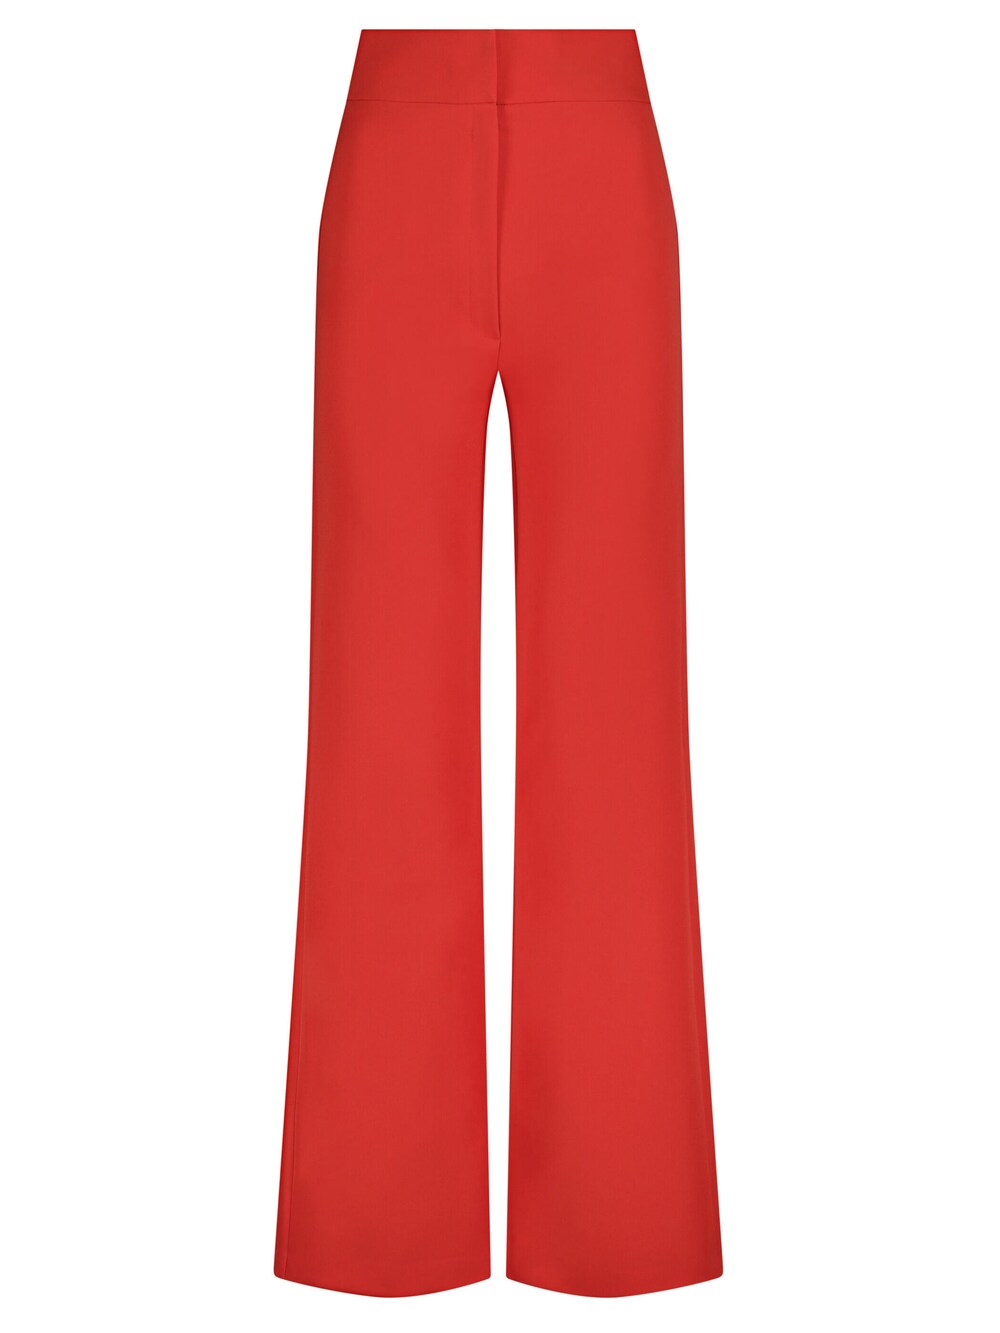 Свободные брюки Nicowa CORINO, красный широкие брюки nicowa setono белый